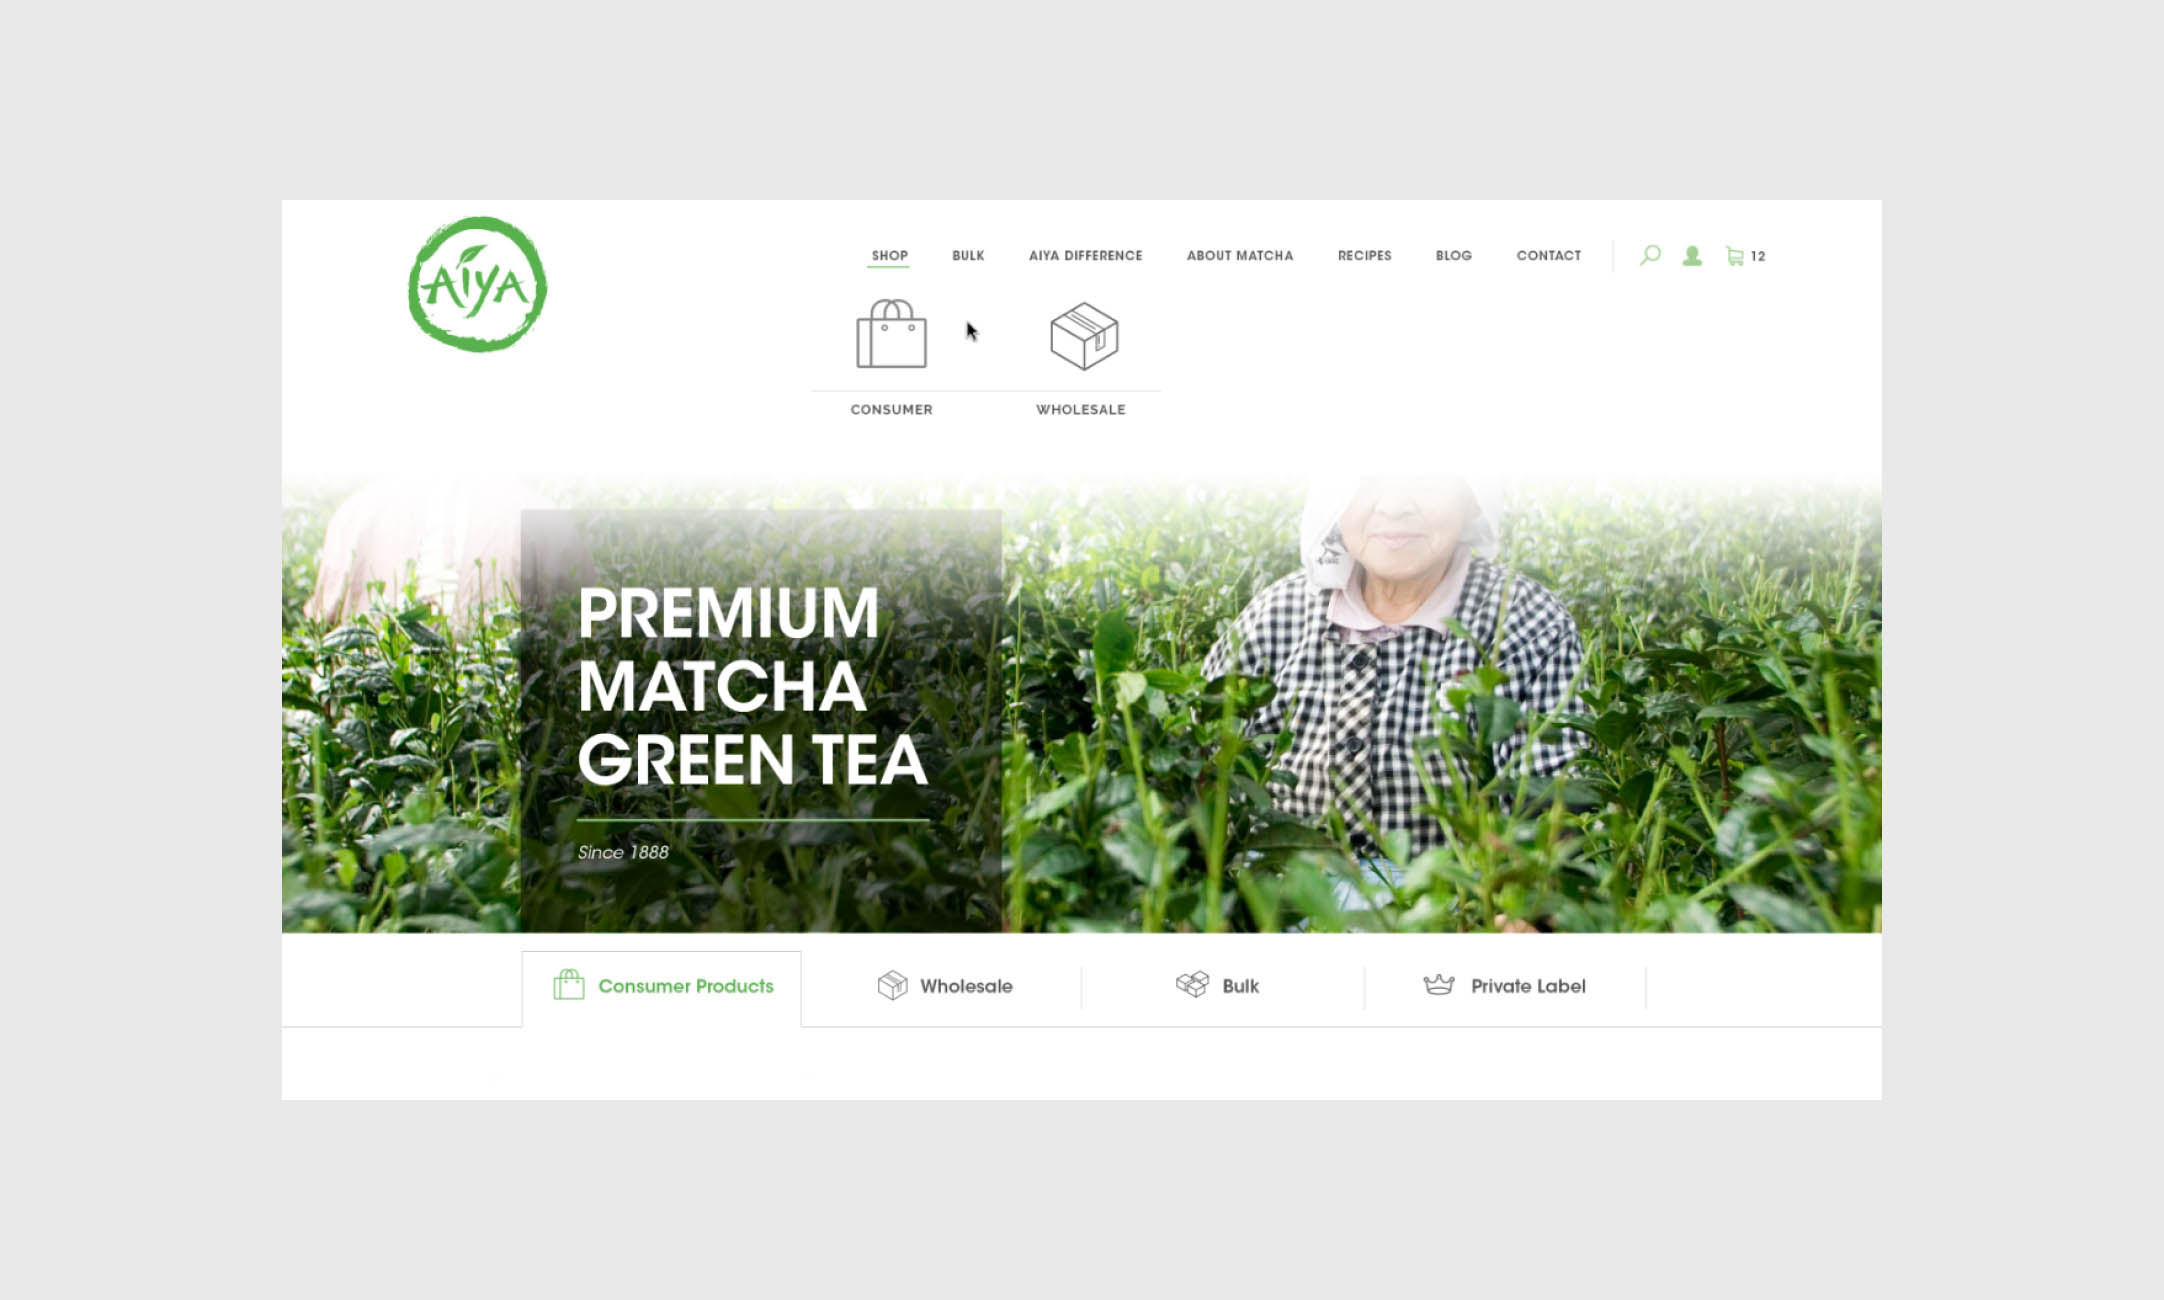 Premium Matcha Tea Company Brews a New Look Online Build Image